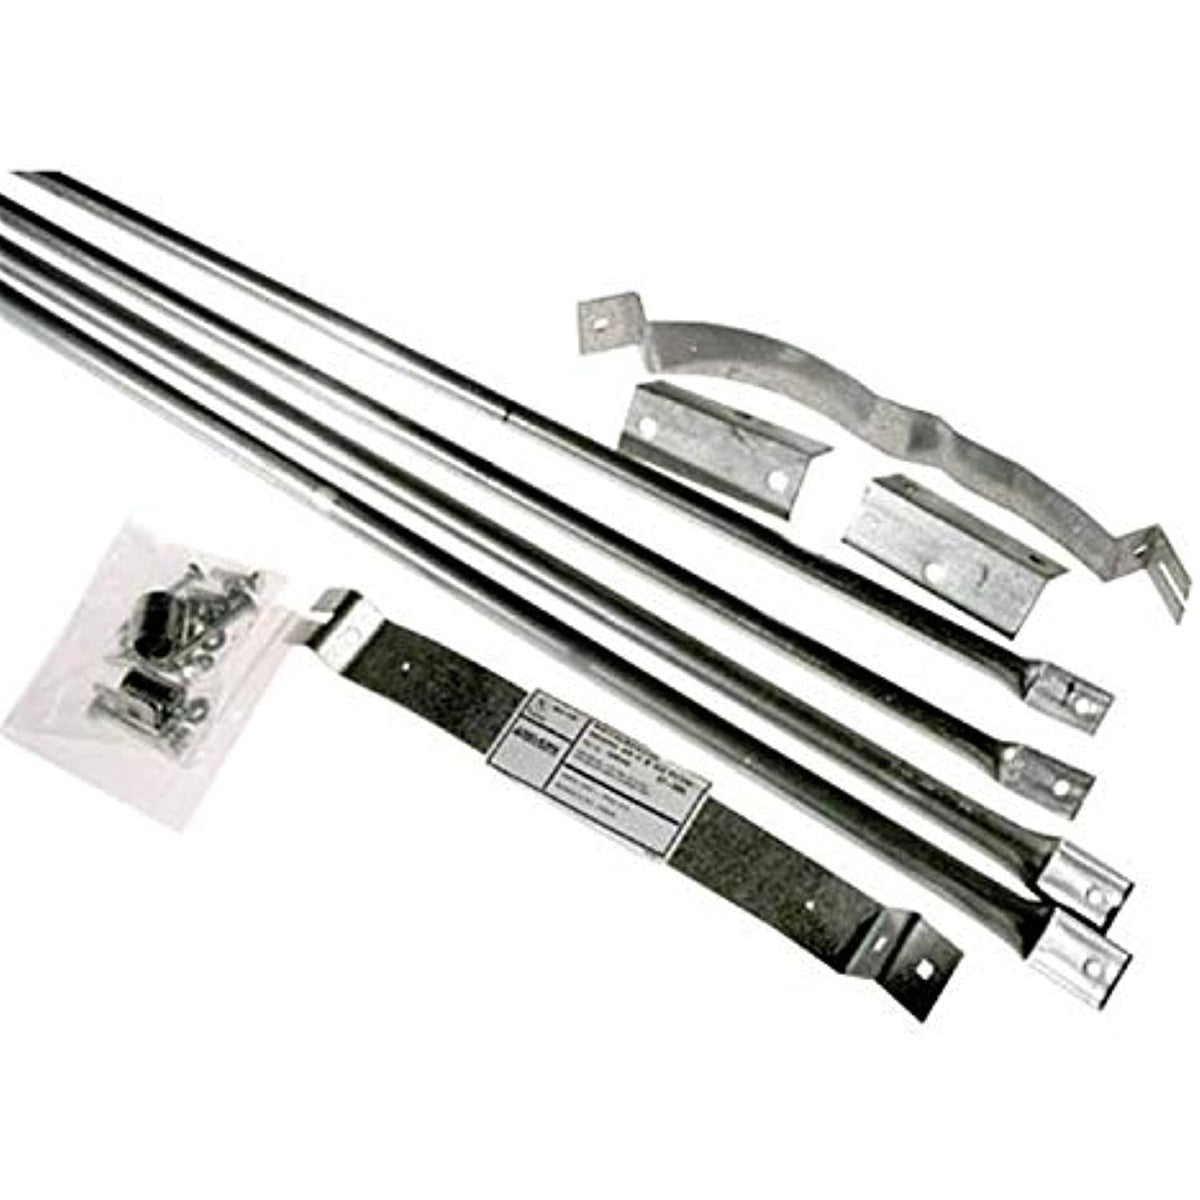 Selkirk Metalbestos 8T-RBK Stainless Steel Roof Brace Kit, 8-Inch ...